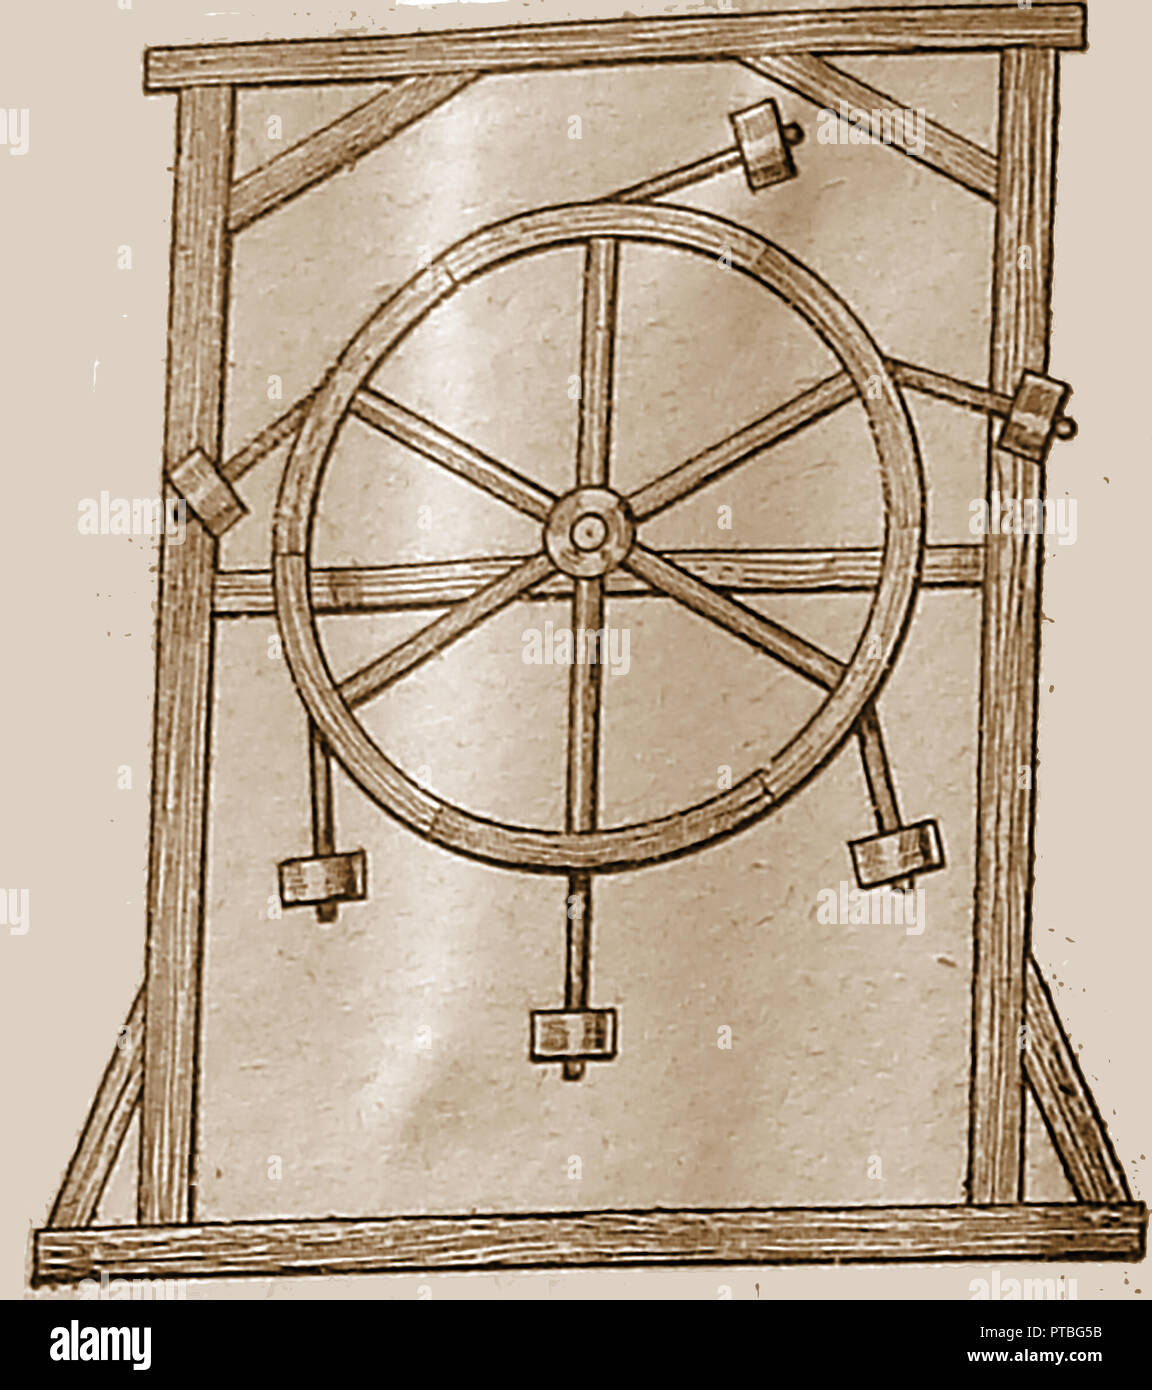 Inventos - La rueda overbalanced, inventó una máquina de movimiento perpetuo por Villard de Honnecourt en el siglo XIII (1941 ilustración Foto de stock